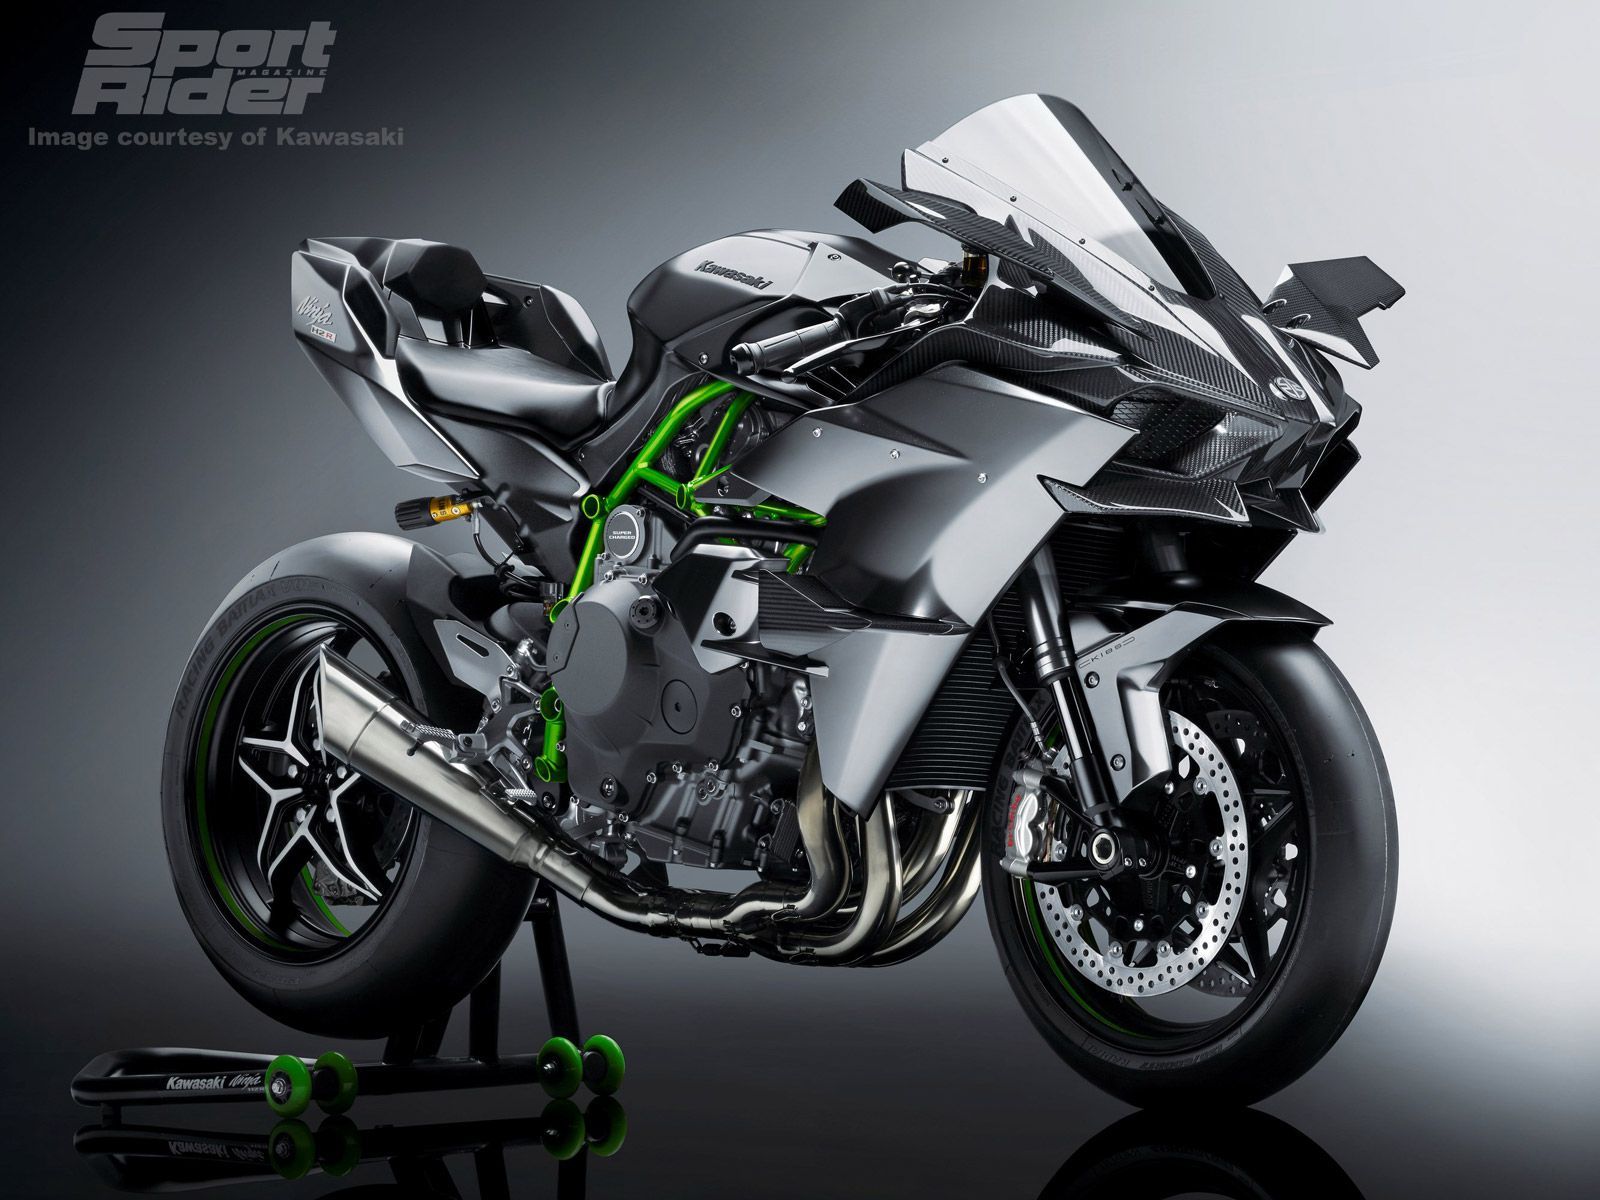 Kawasaki's Ninja H2 And H2R Go Even More High Tech For 2017 With